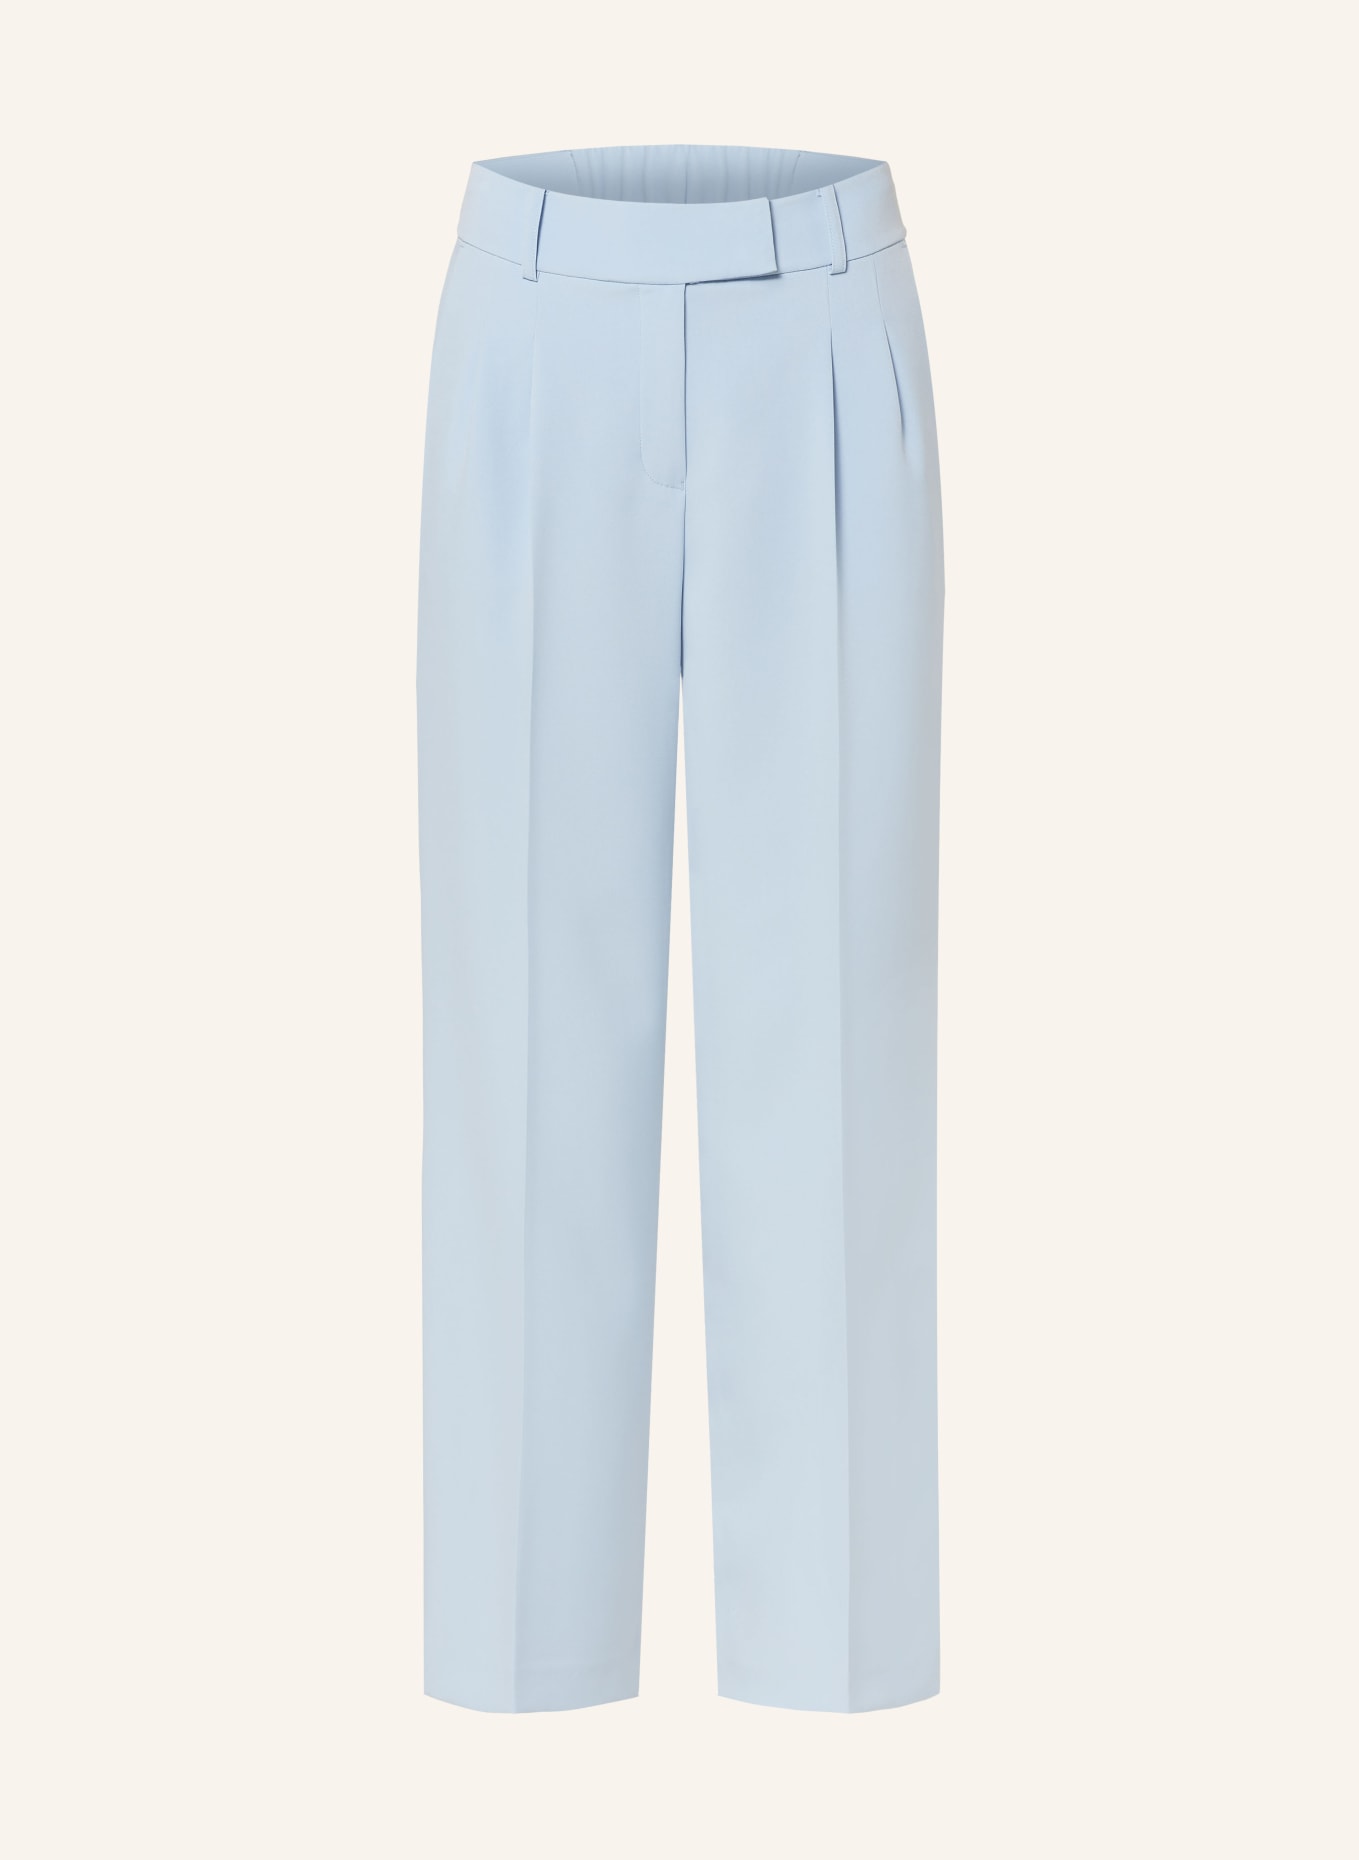 MARC AUREL Trousers, Color: LIGHT BLUE (Image 1)